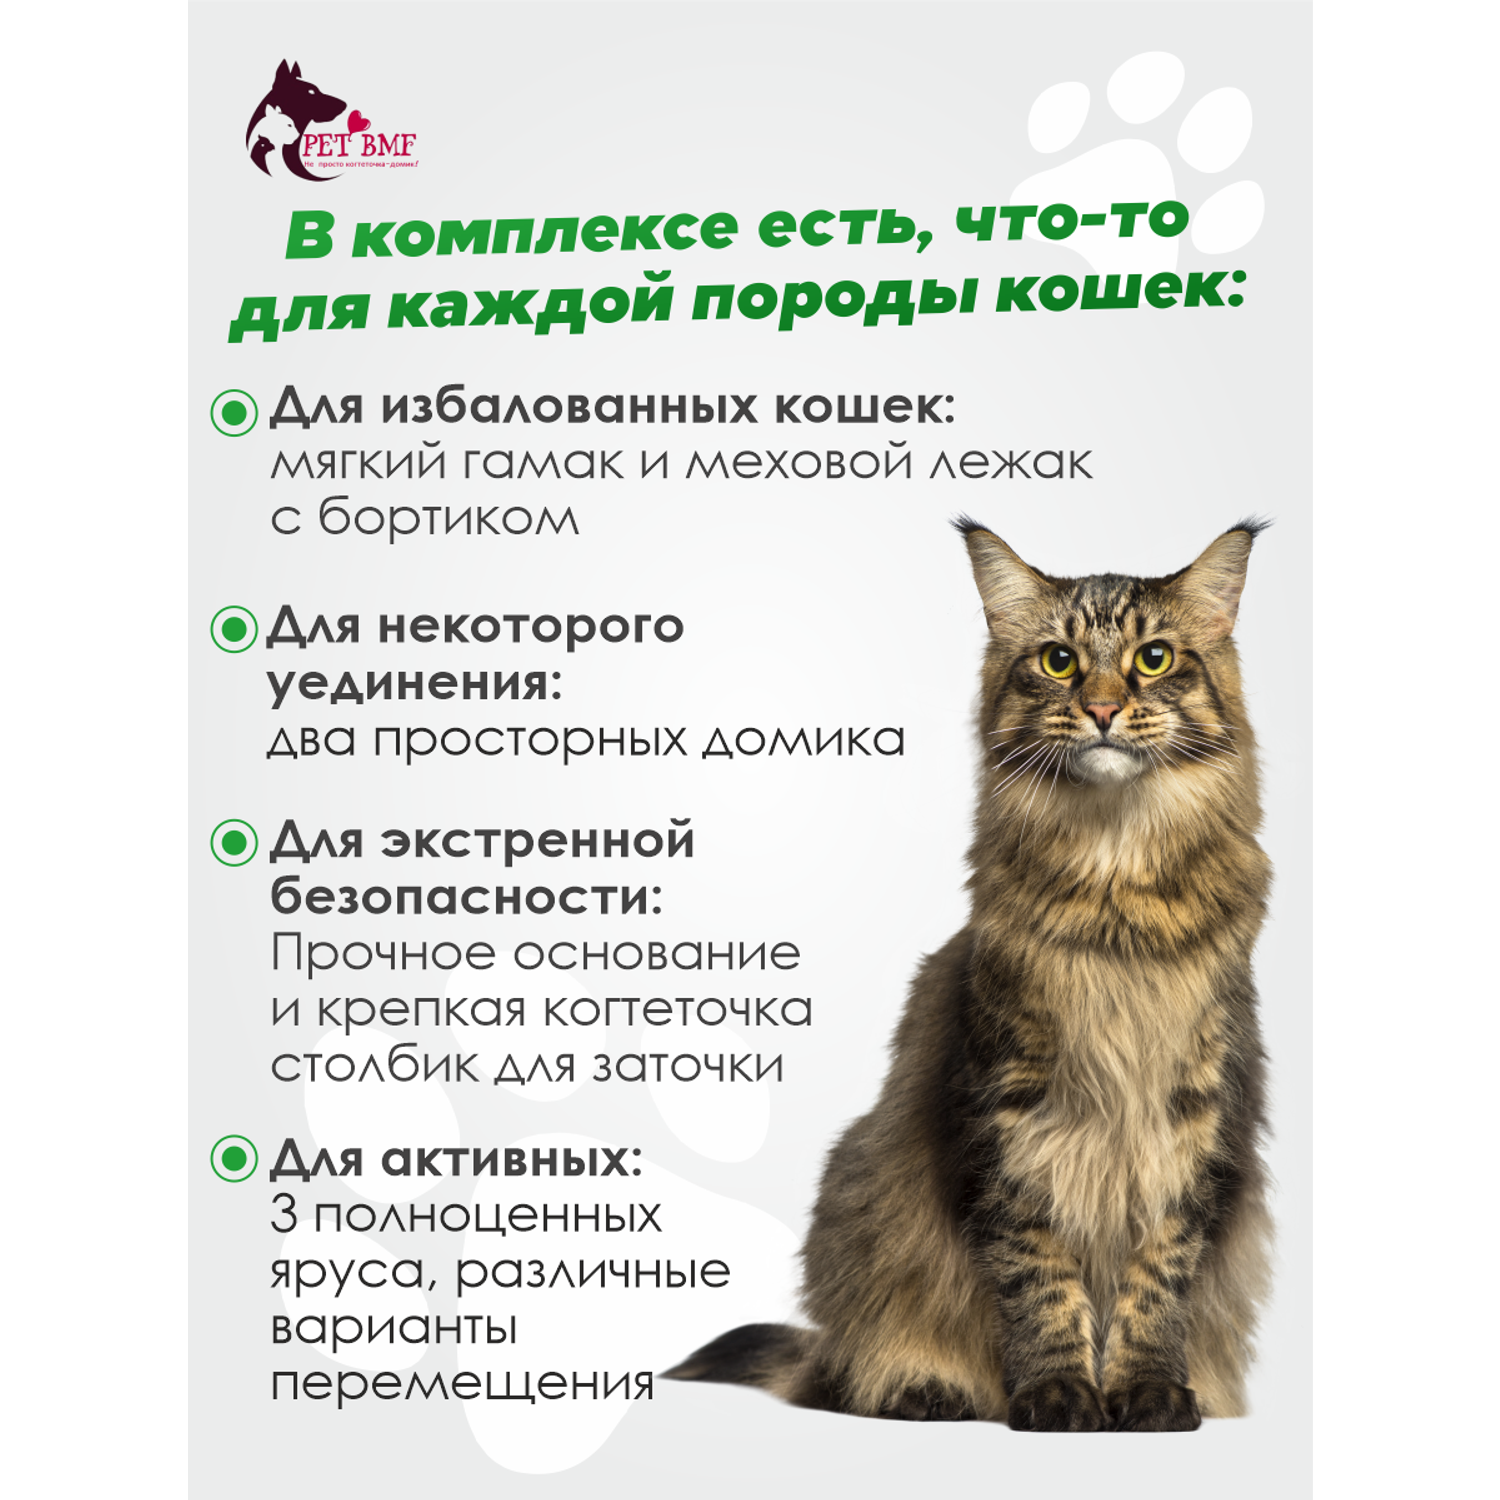 Домик для кошки с когтеточкой Pet БМФ Бежевый - фото 23